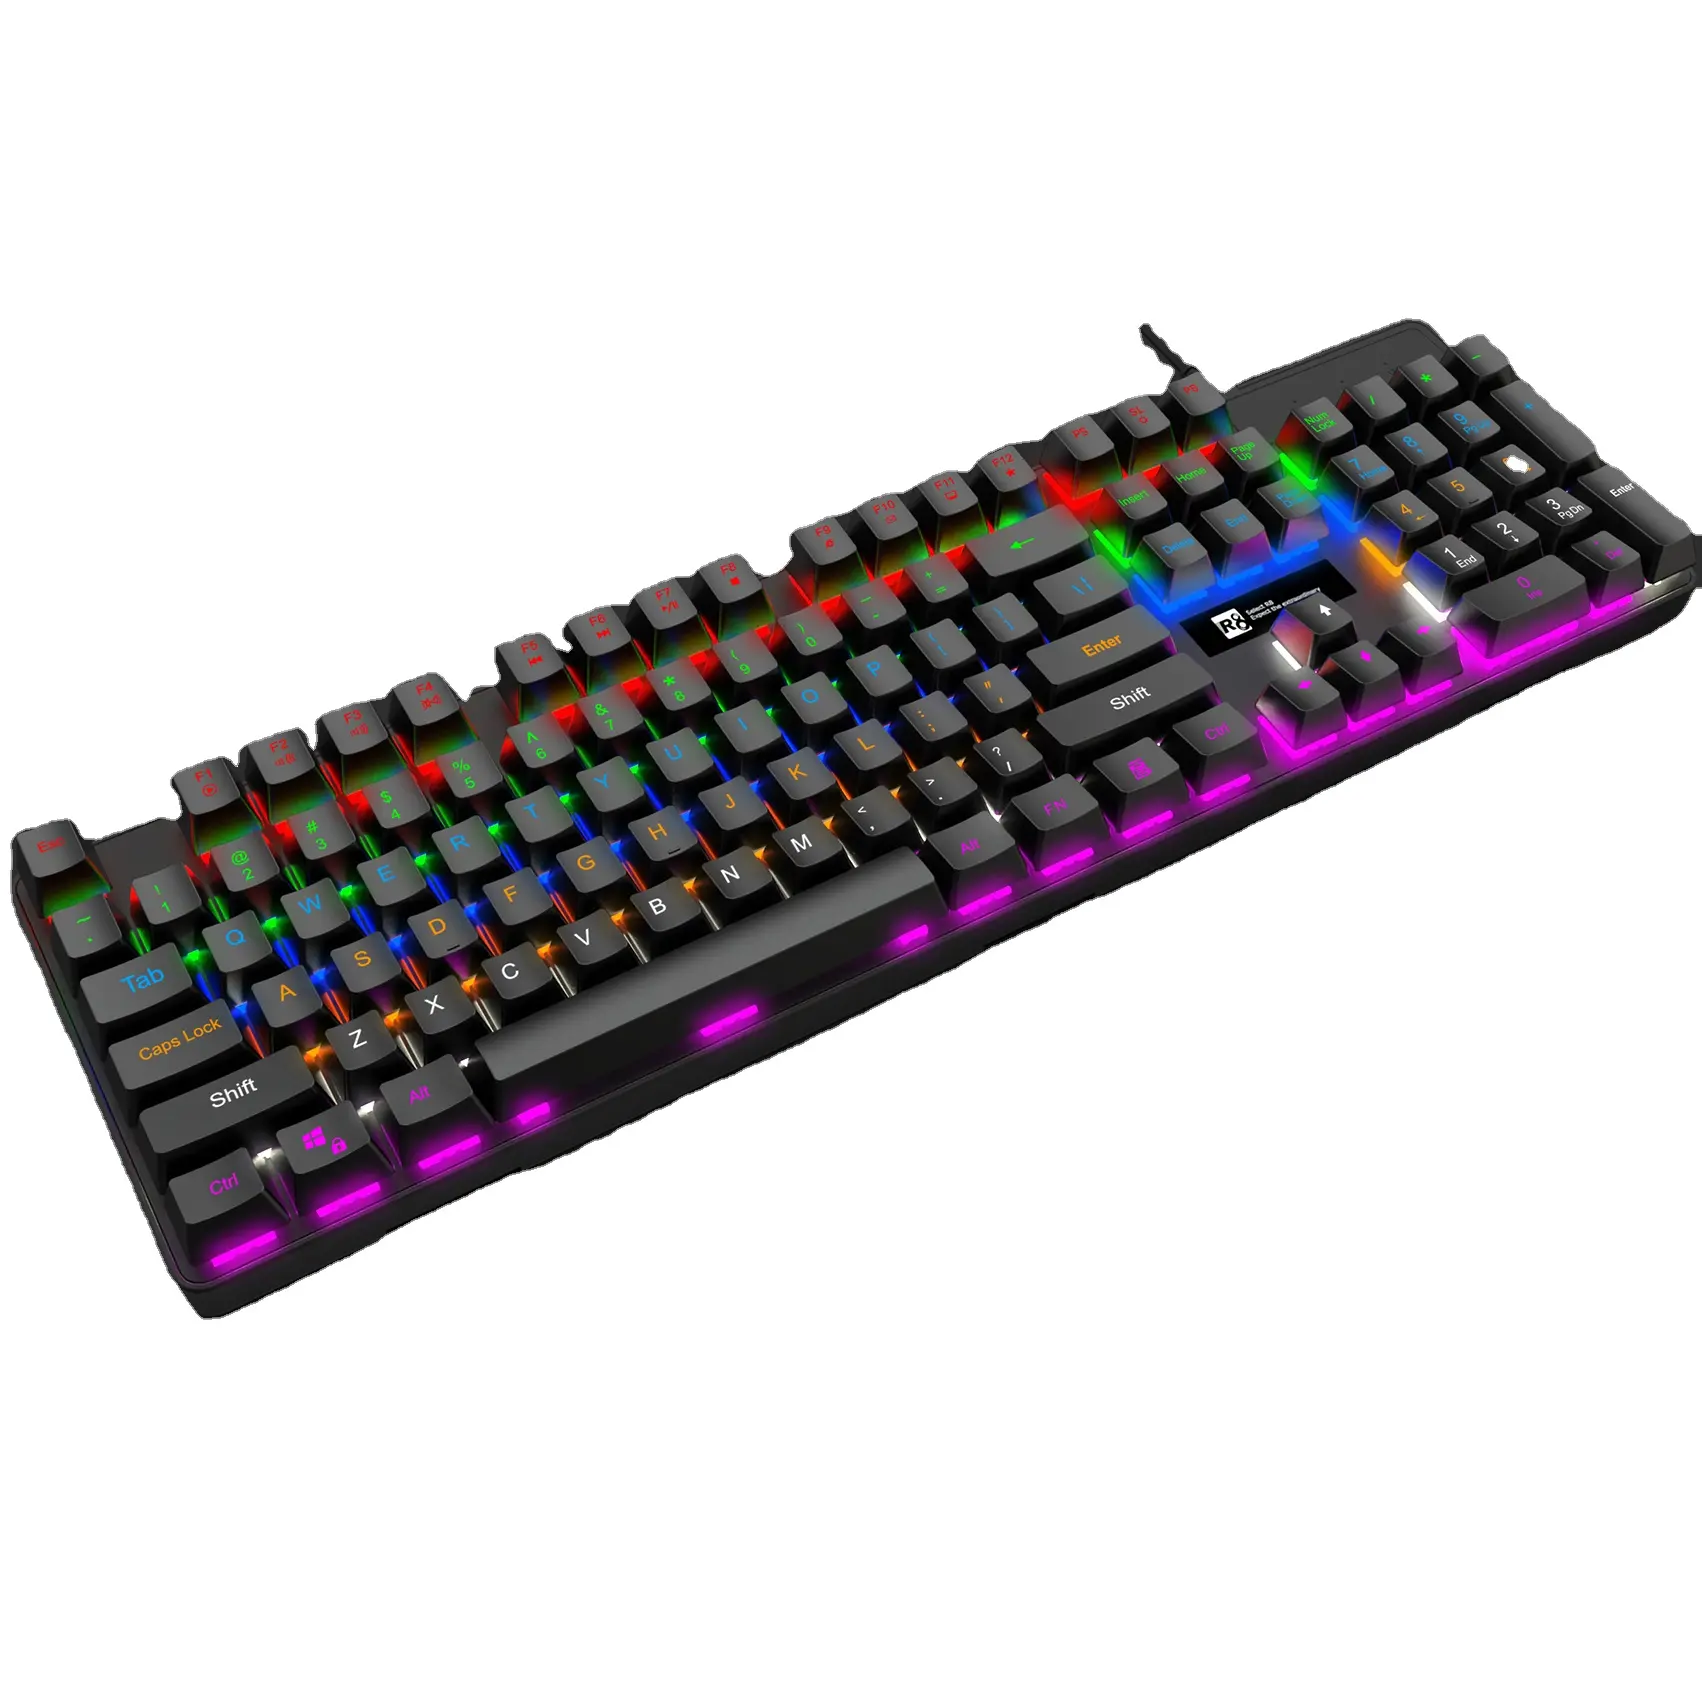 اسم العلامة التجارية OEM لاعب RGB السلكية شغال ألعاب الكمبيوتر لوحة المفاتيح مع قوس قزح مصباح ليد ملون